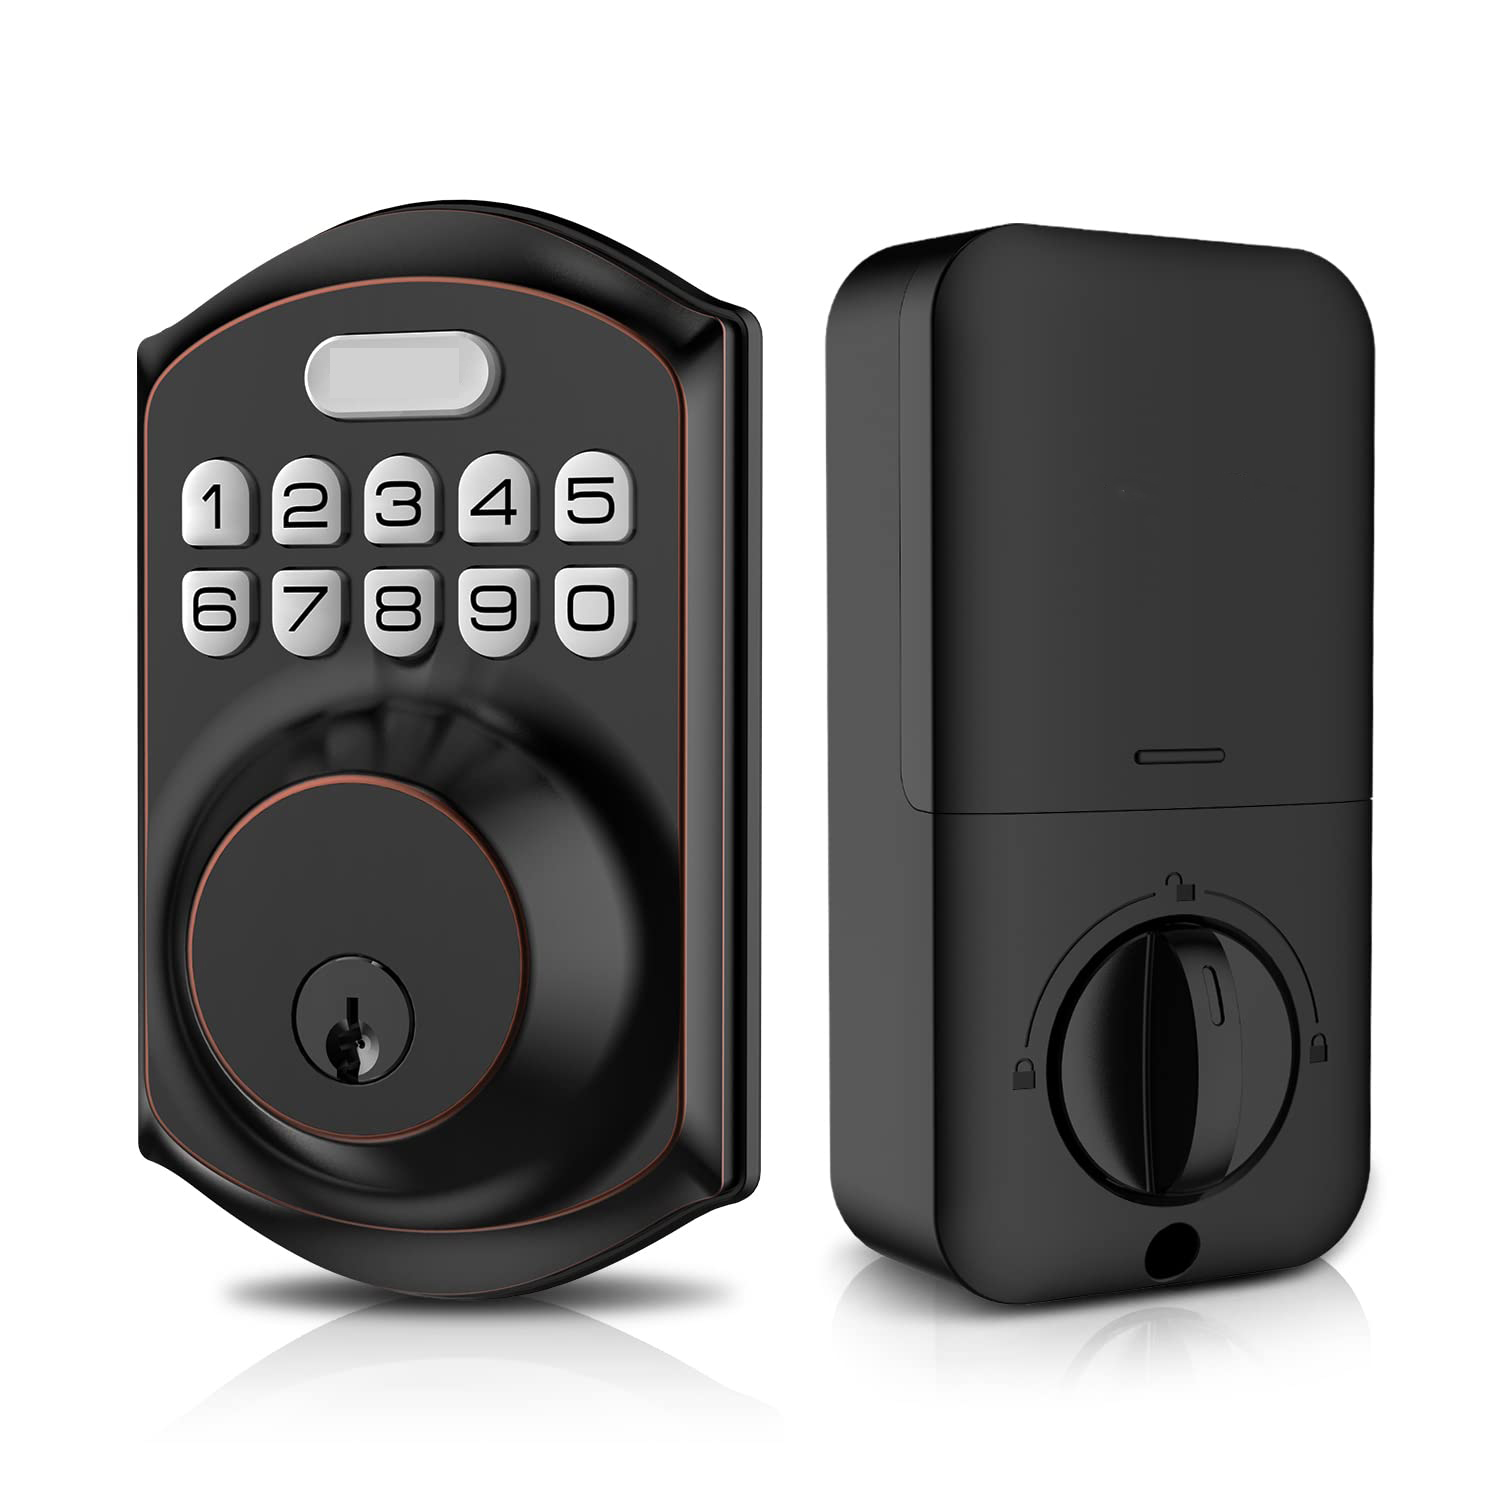 Keyless Entry Door Lock with Keypad - Smart Deadbolt Lock for Front Door with 2 Keys